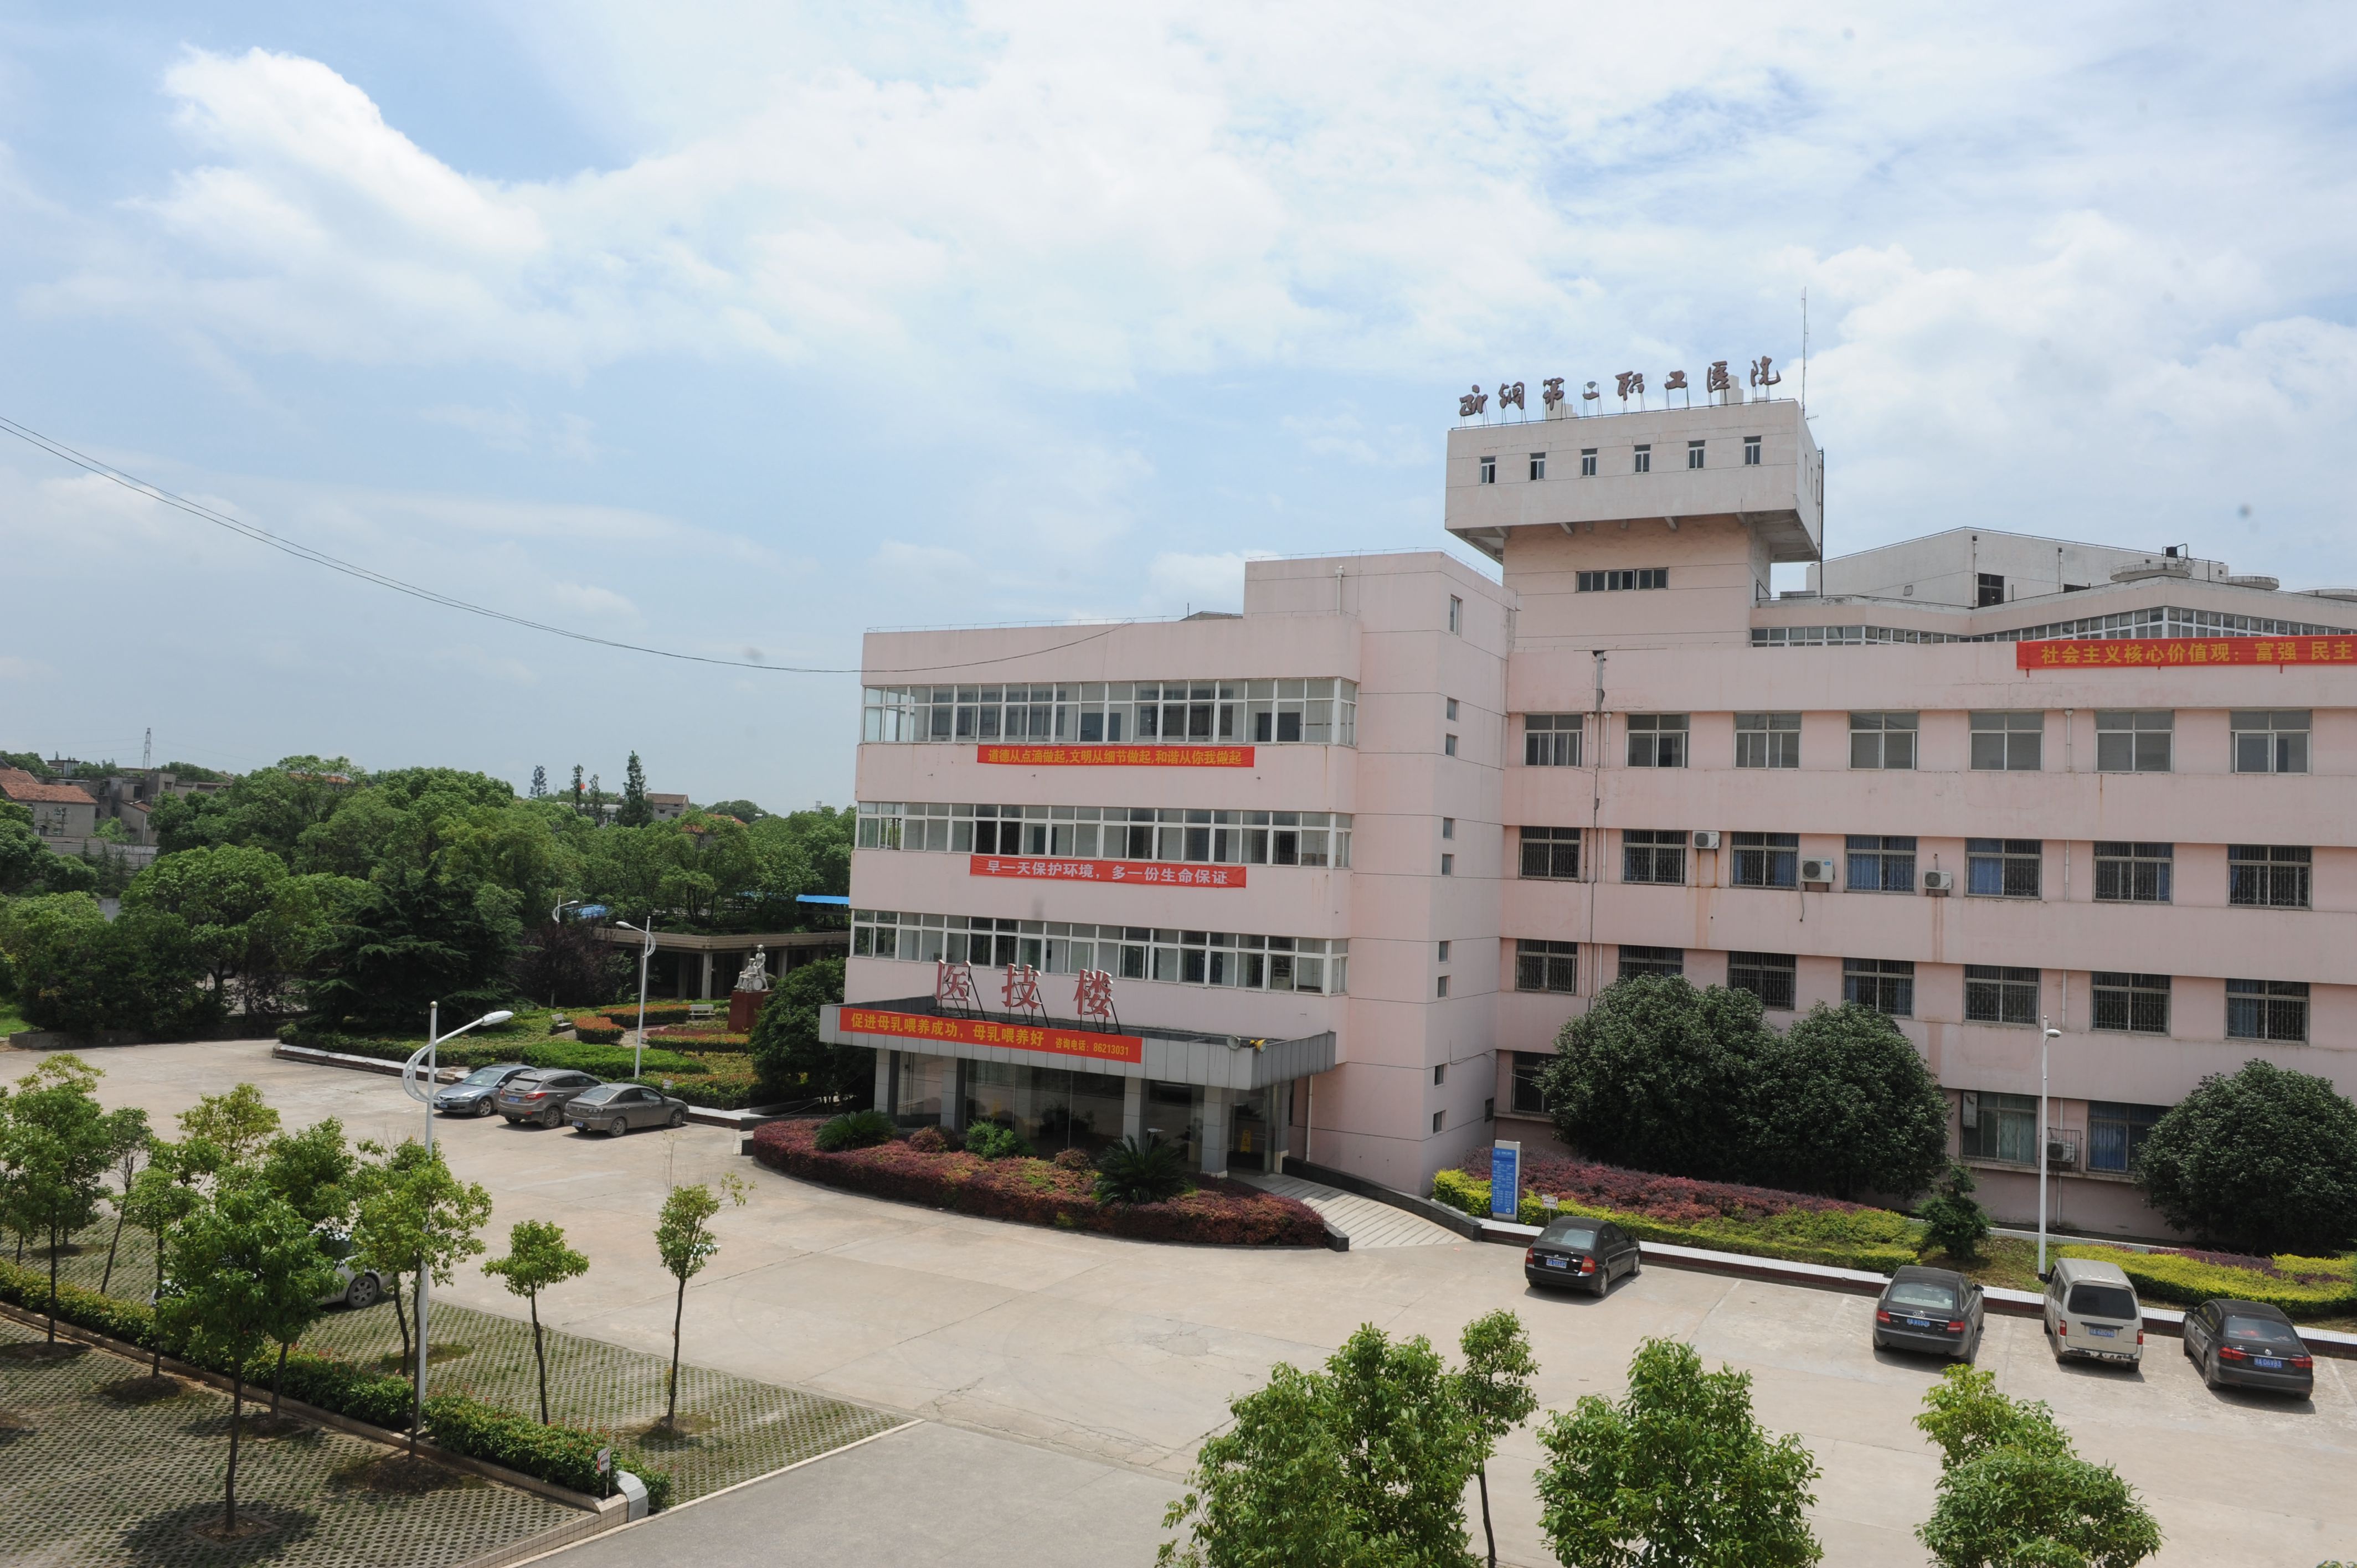 武汉钢铁(集团)公司第二职工医院